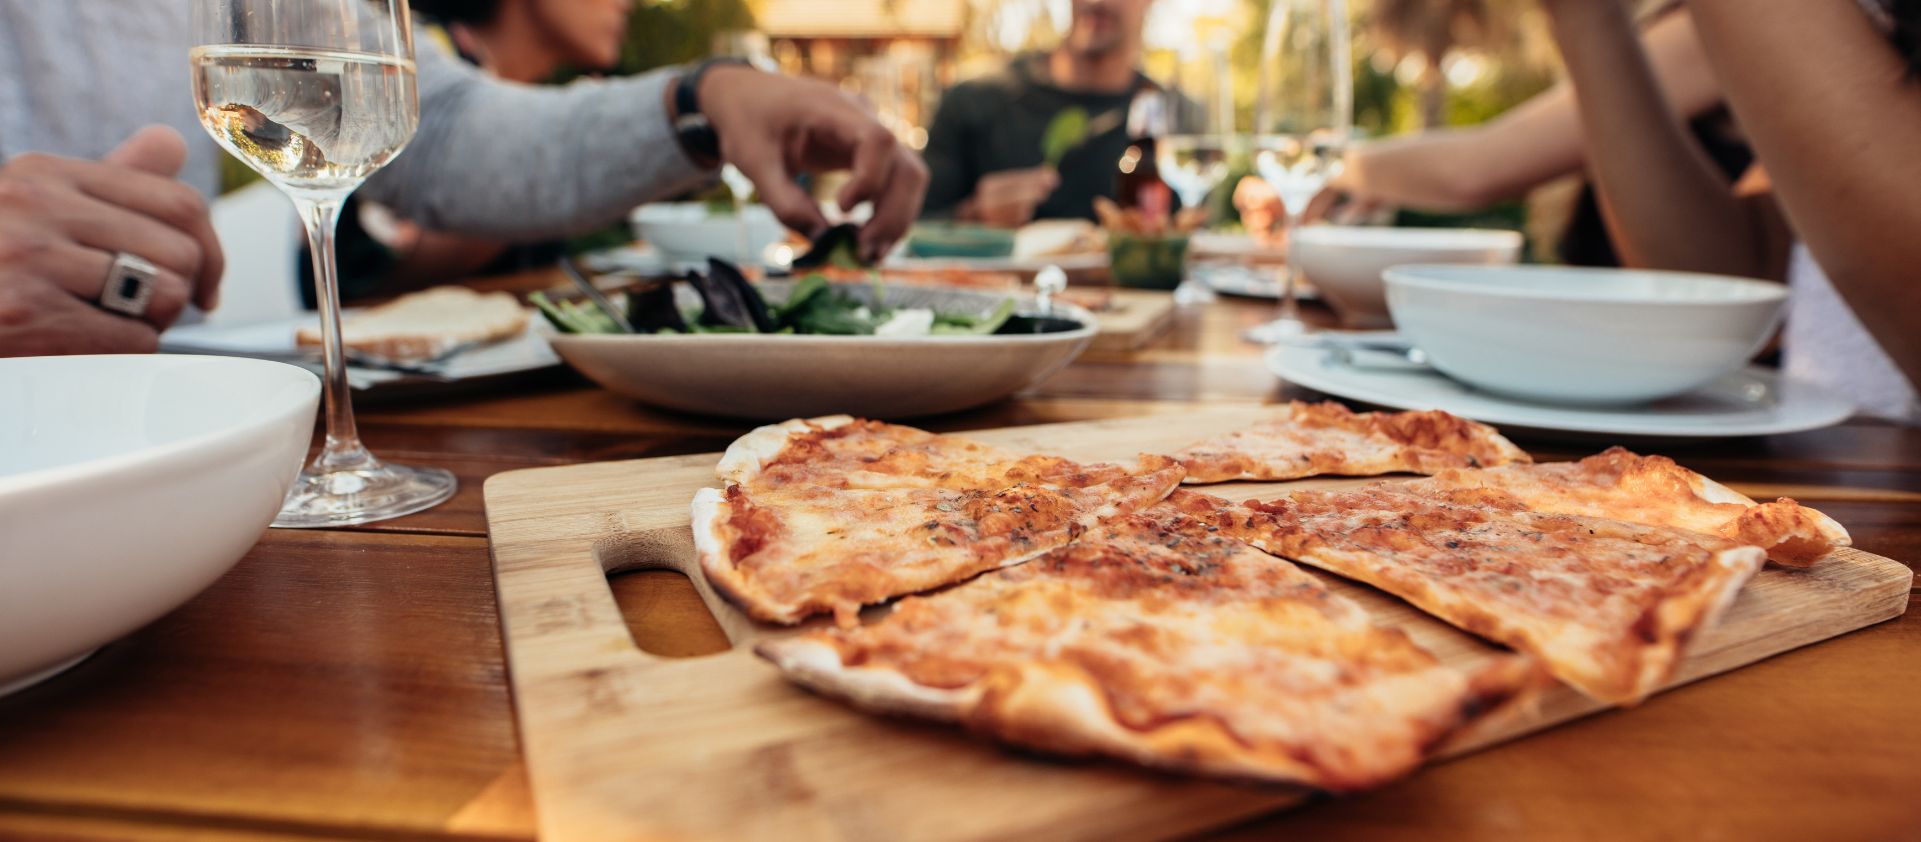 Maridaje de la pizza: existen mejores opciones que la cerveza o el labrusco